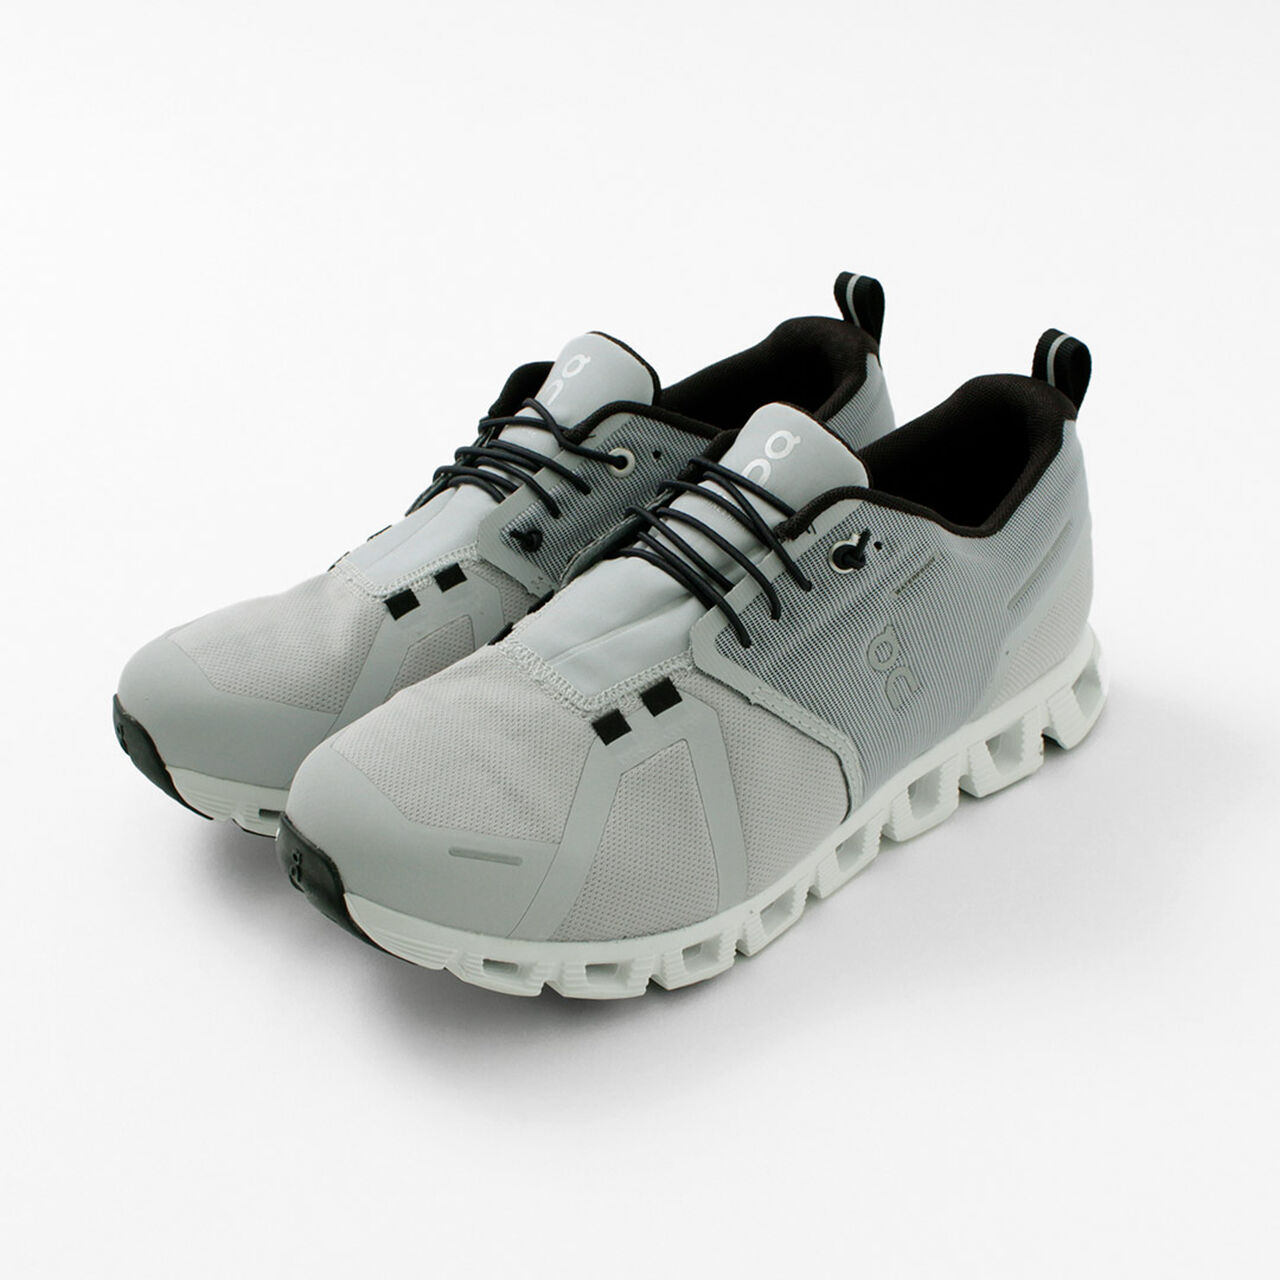 Cloud 5 Waterproof Sneakers,, large image number 14